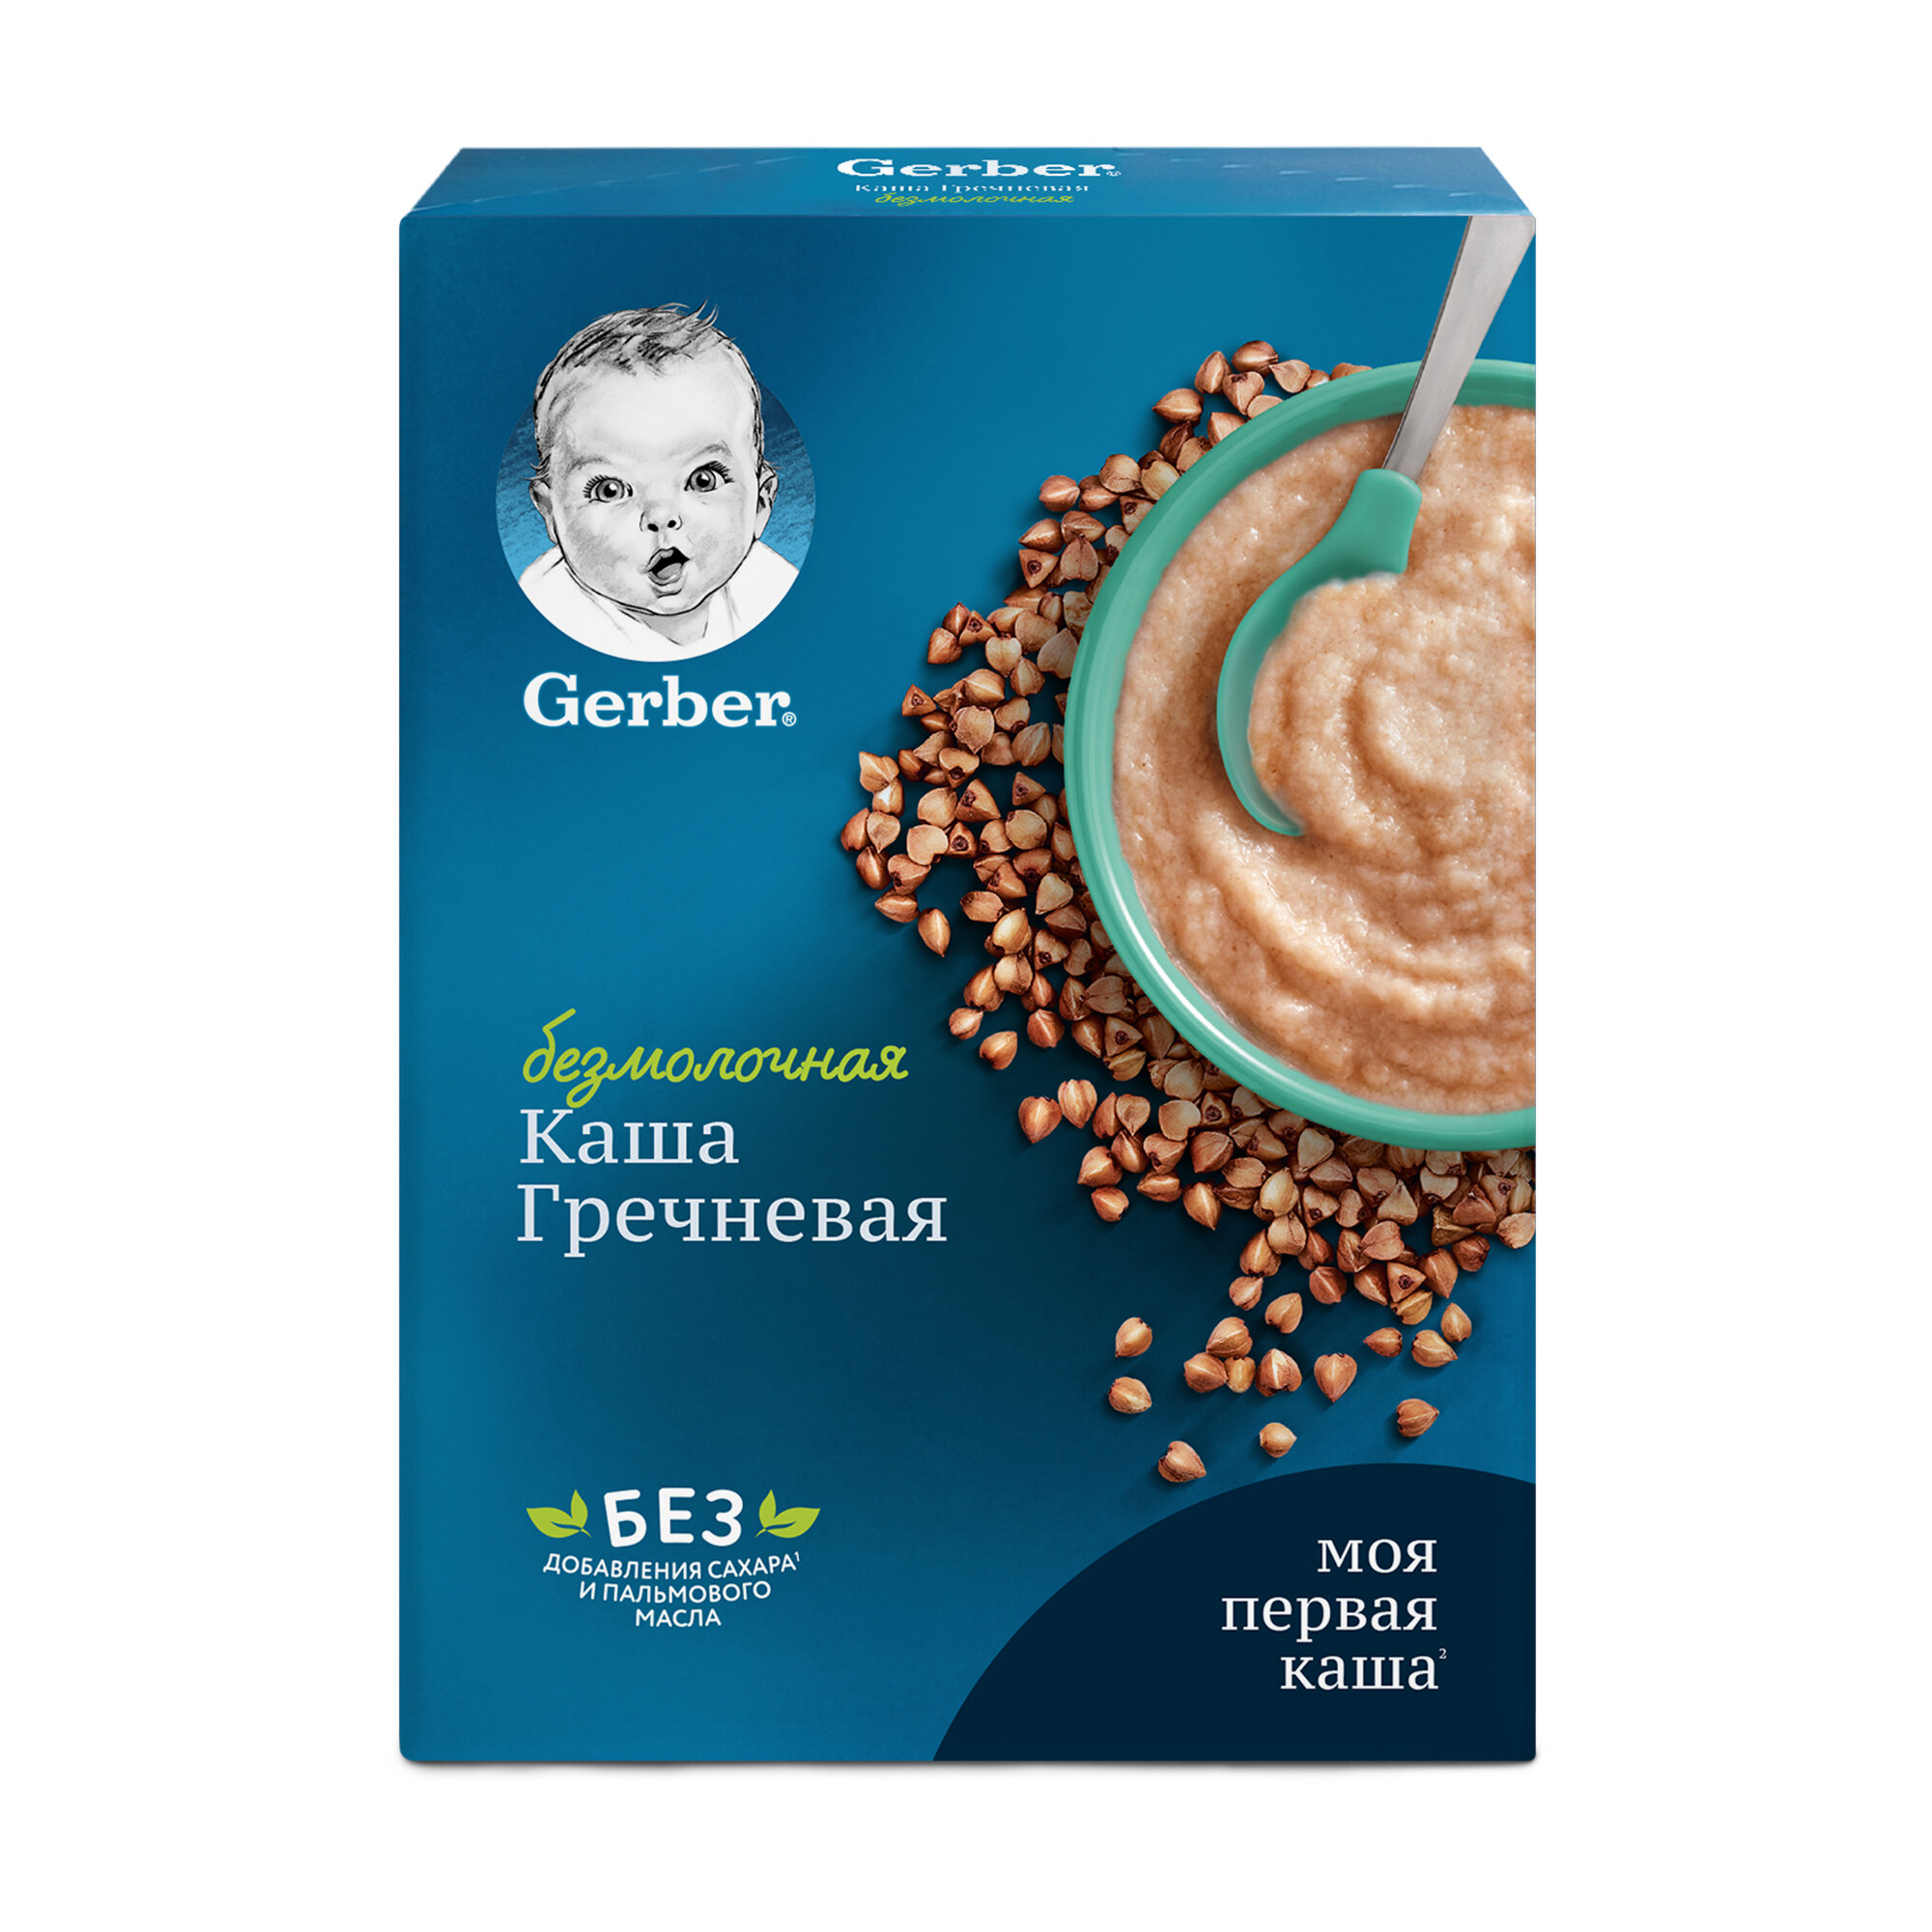 Gerber ® Безмолочная гречневая гипоаллергенная каша, 180гр - фото №14